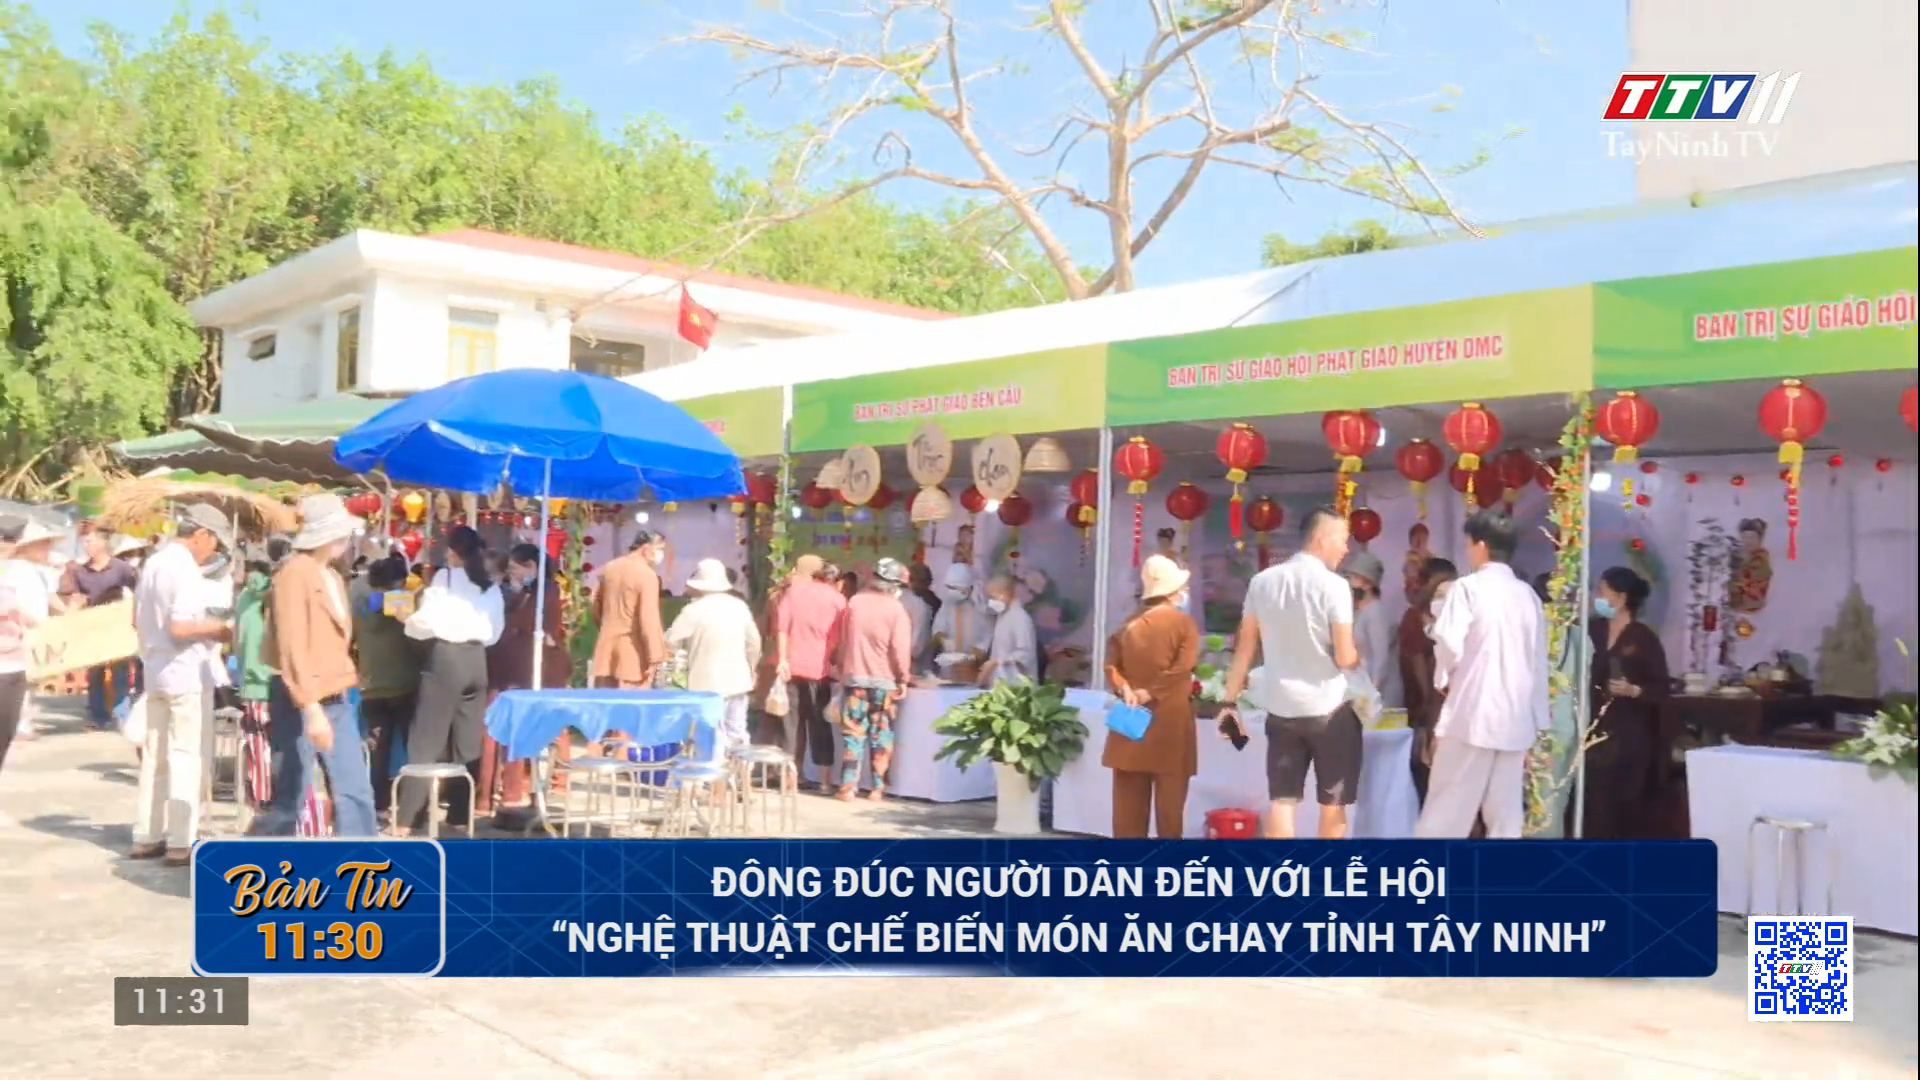 Đông đúc người dân đến với Lễ hội “Nghệ thuật chế biến món ăn chay tỉnh Tây Ninh” | TayNinhTV